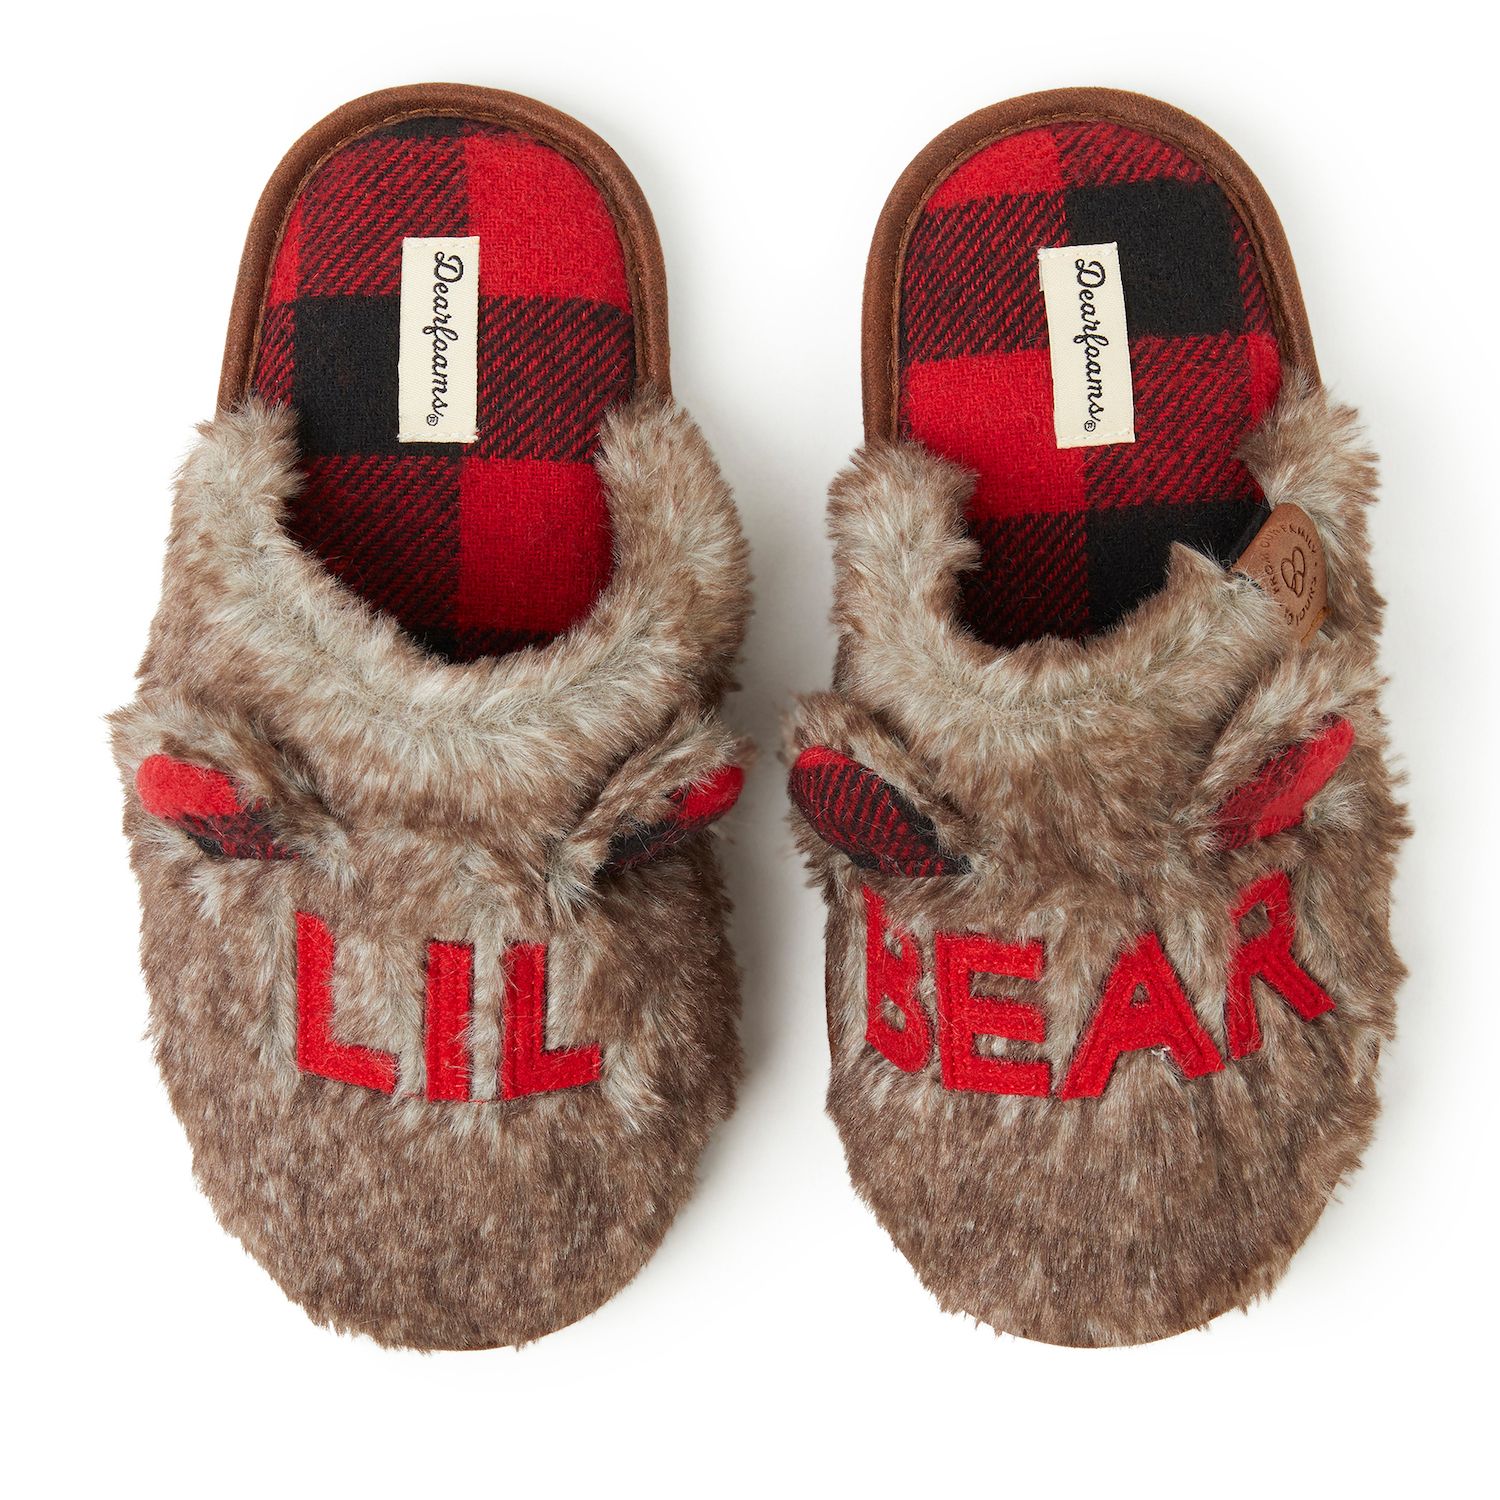 lil bear slippers kohls